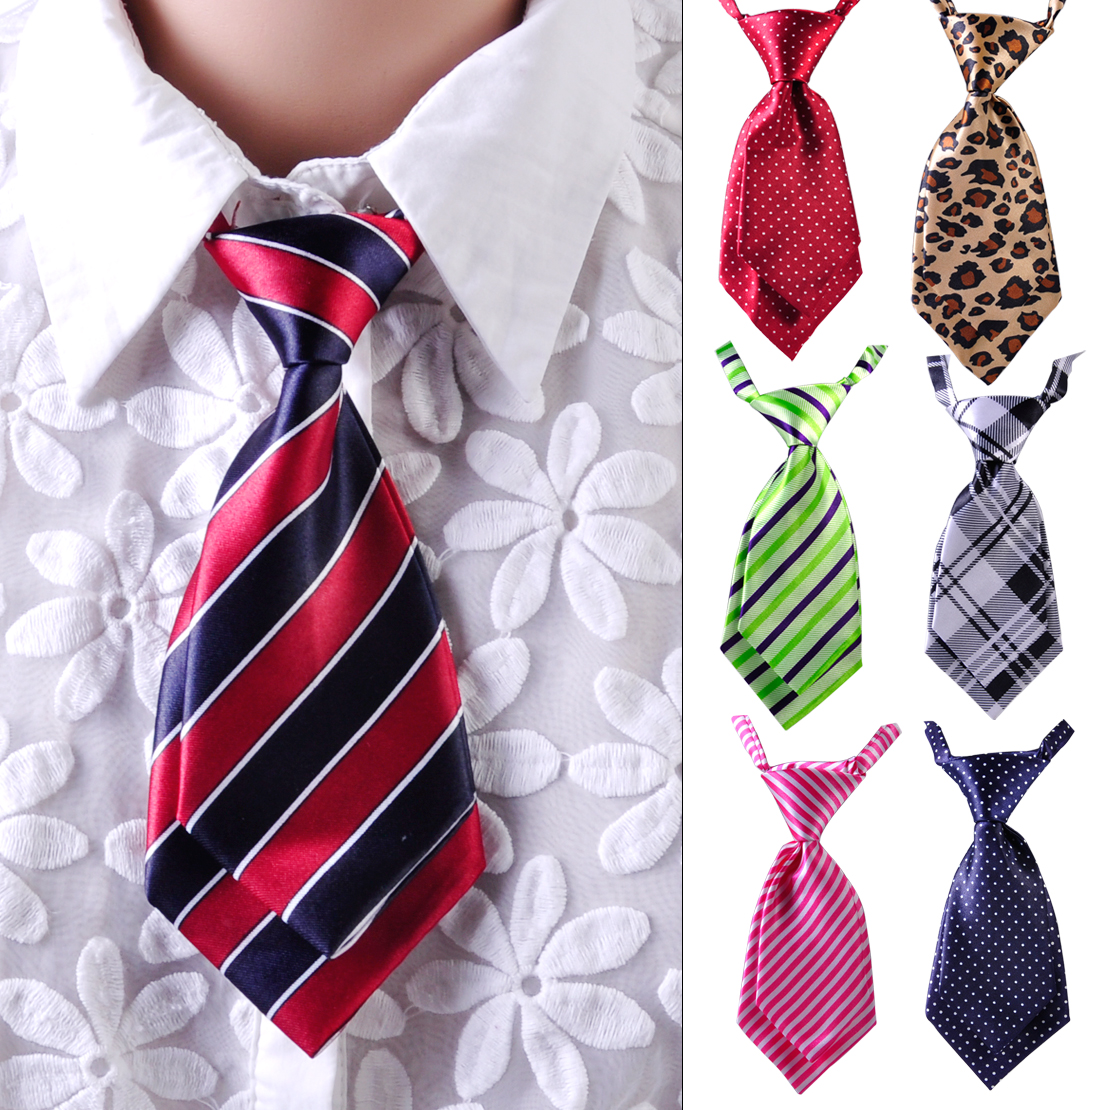 Banquet Adjustable Tie Necktie Striped Polka Dots Plaids fit Women ...